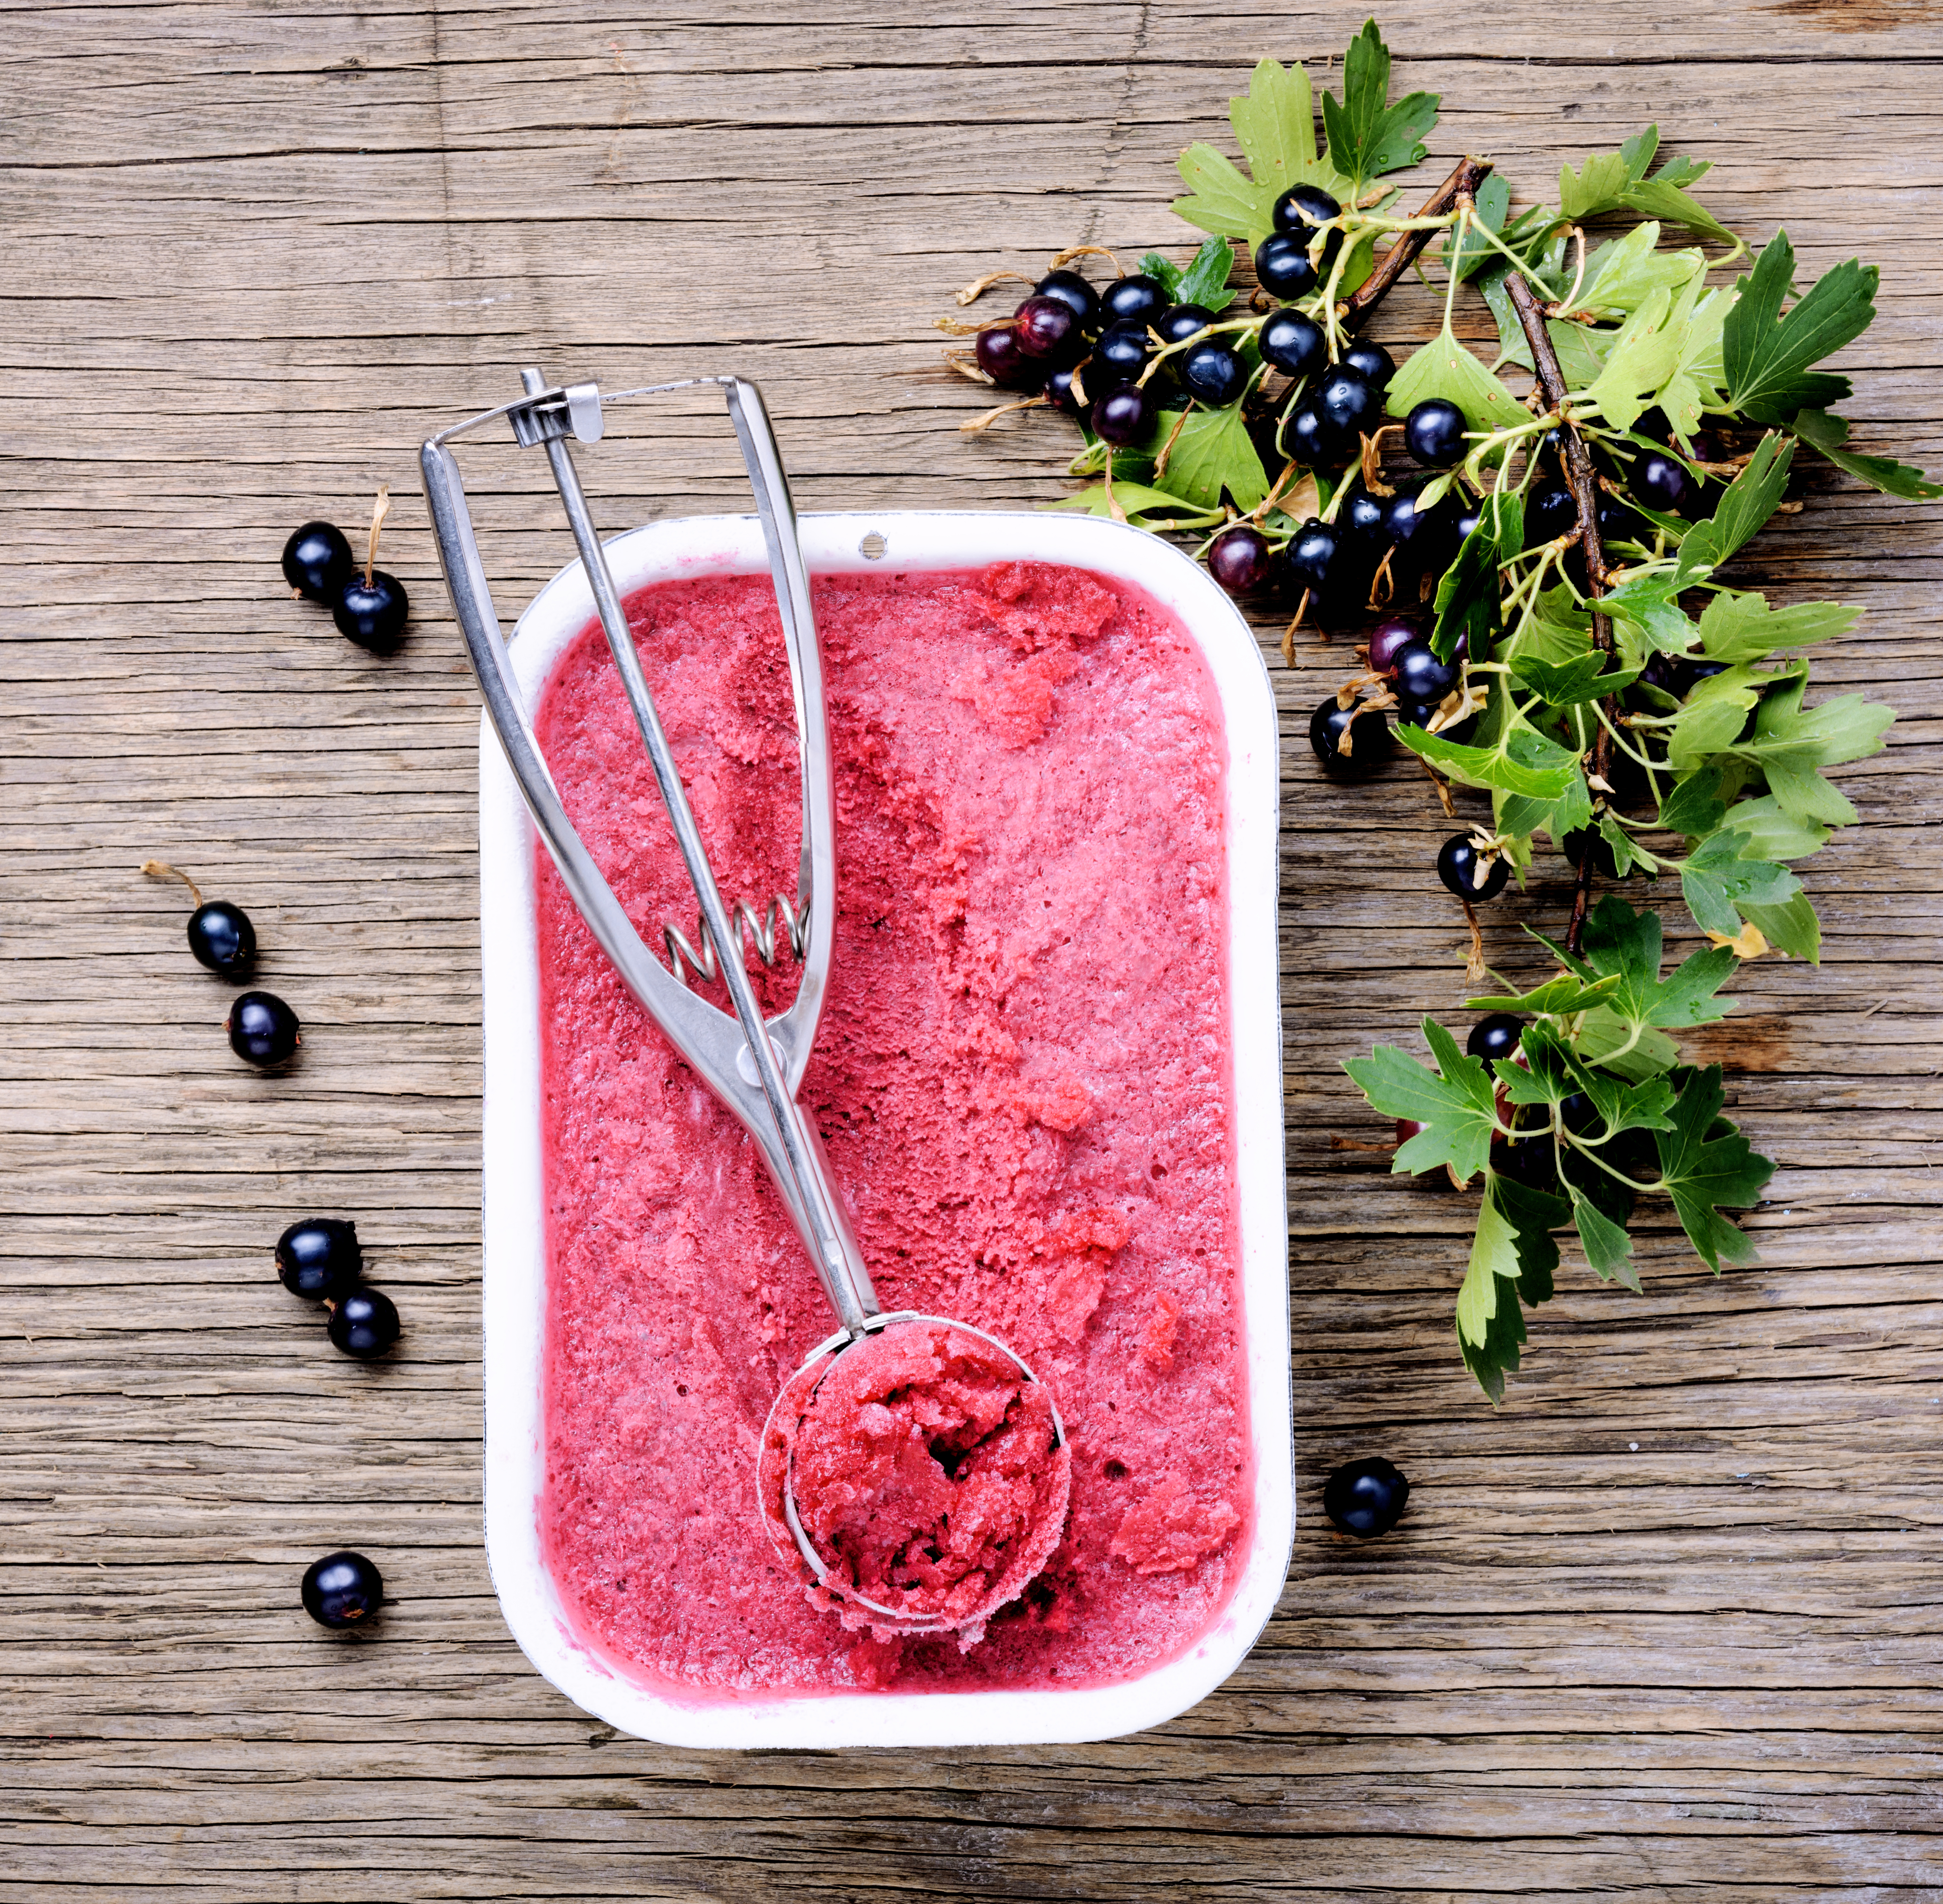 Summer ice cream from black currant berries.Frozen berries sorbet